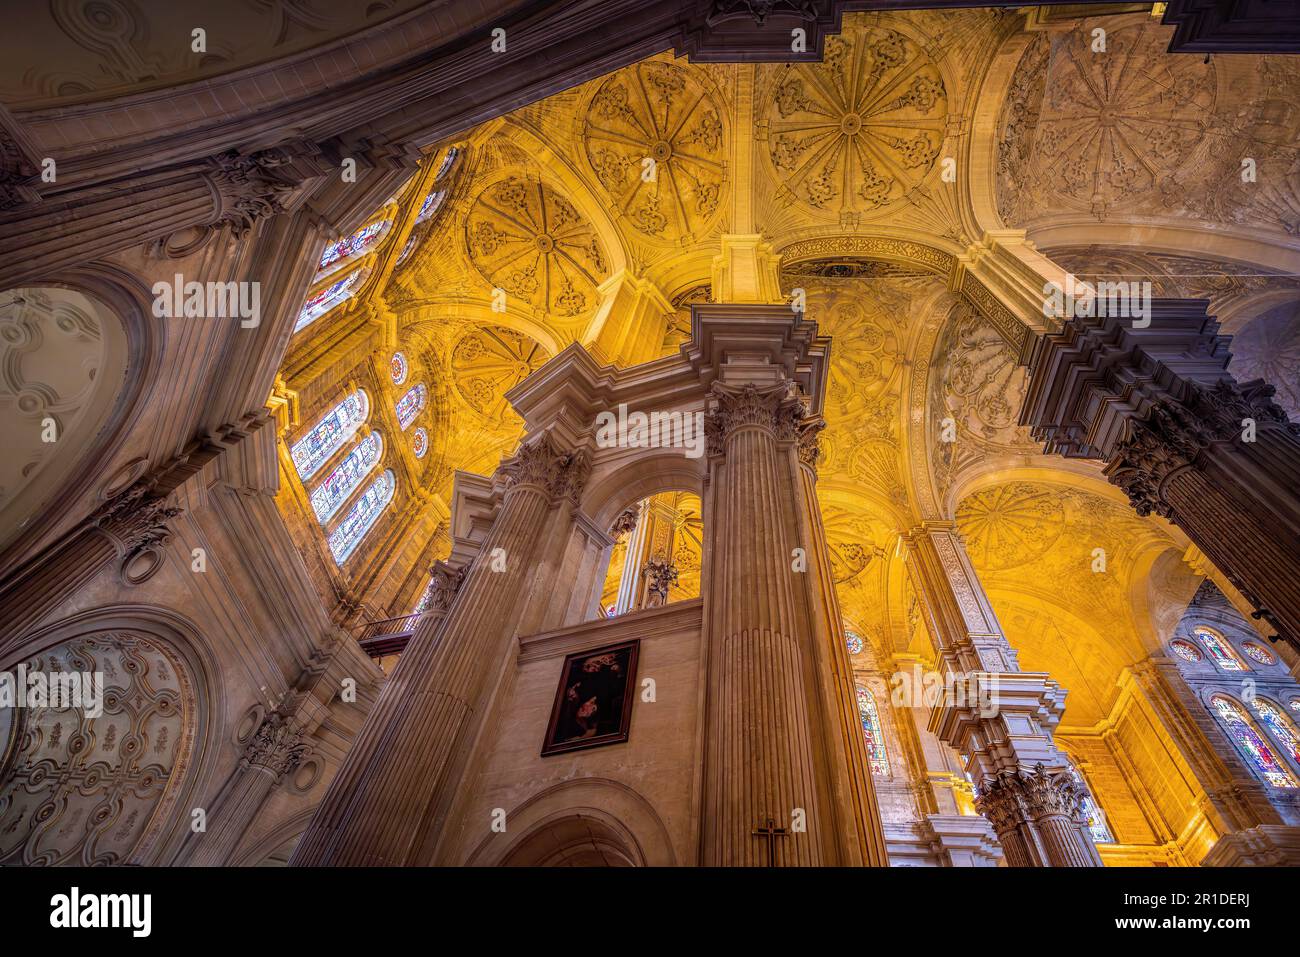 Malaga Cathedral Ceiling - Malaga, Andalusia, Spain Stock Photo